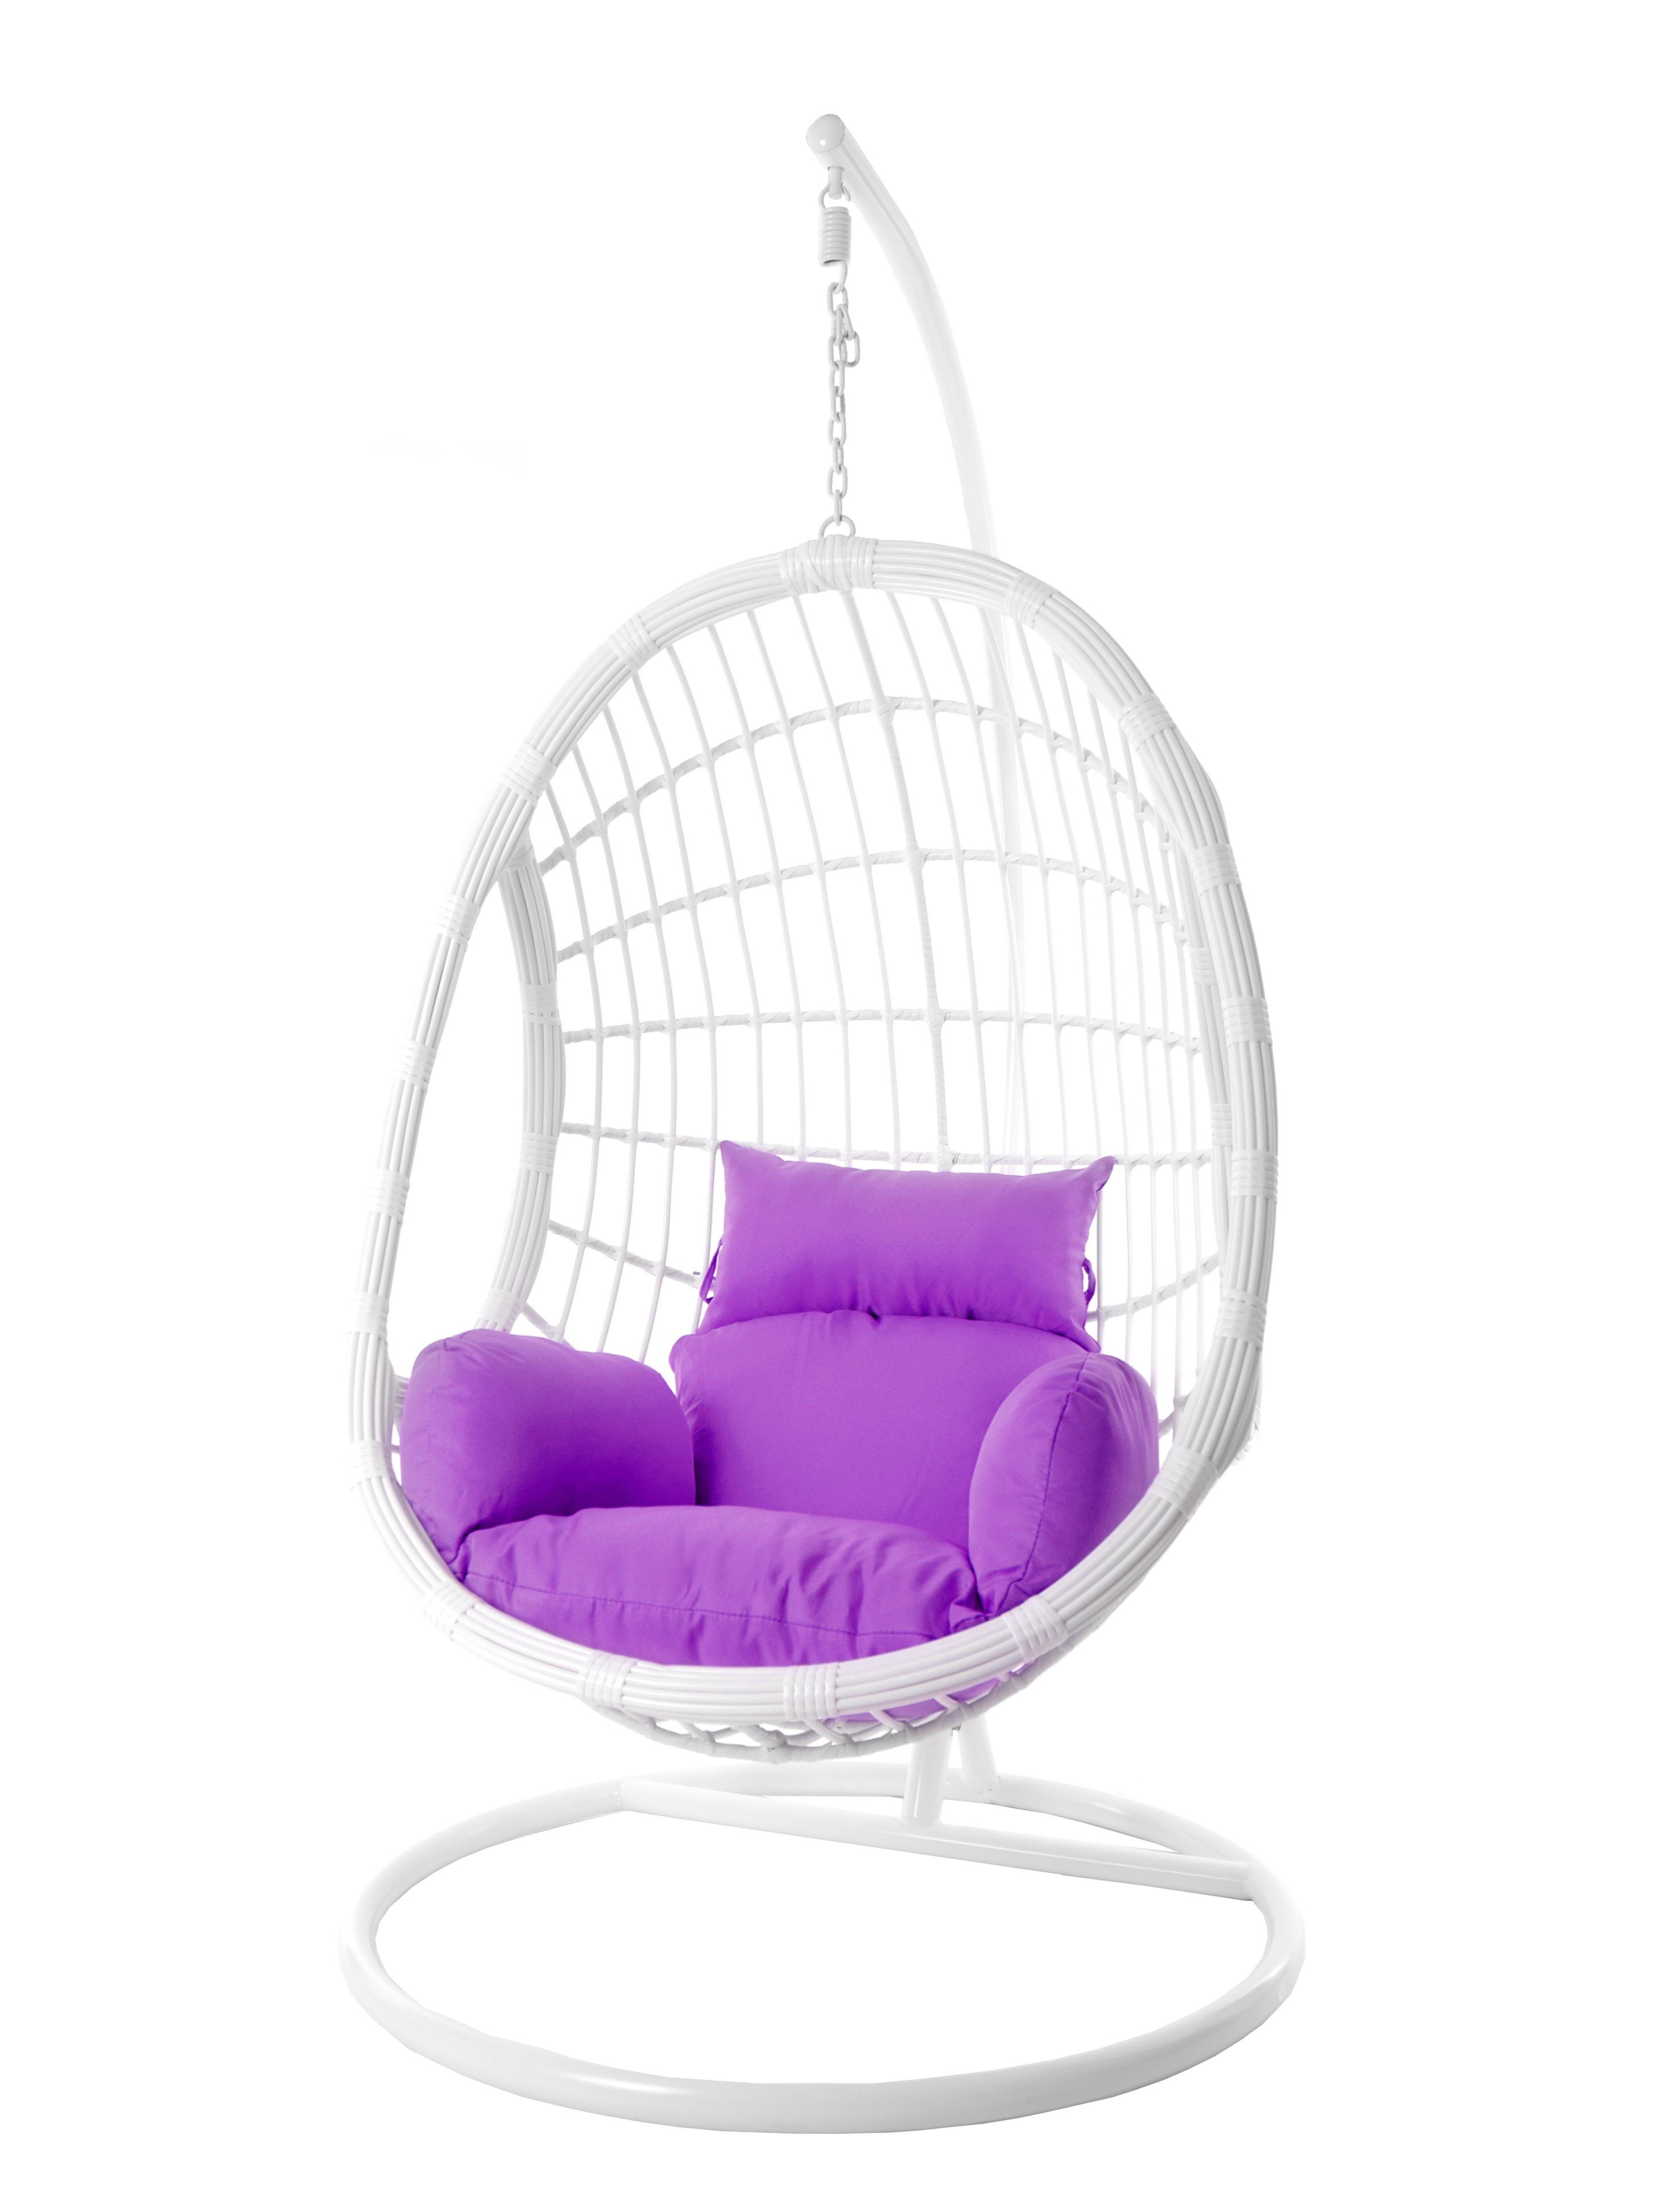 KIDEO Hängesessel Hängesessel PALMANOVA, Schwebesessel Loungemöbel, mit Kissen, weiße violet) Hängesitz Gestell lila moderner (4050 und